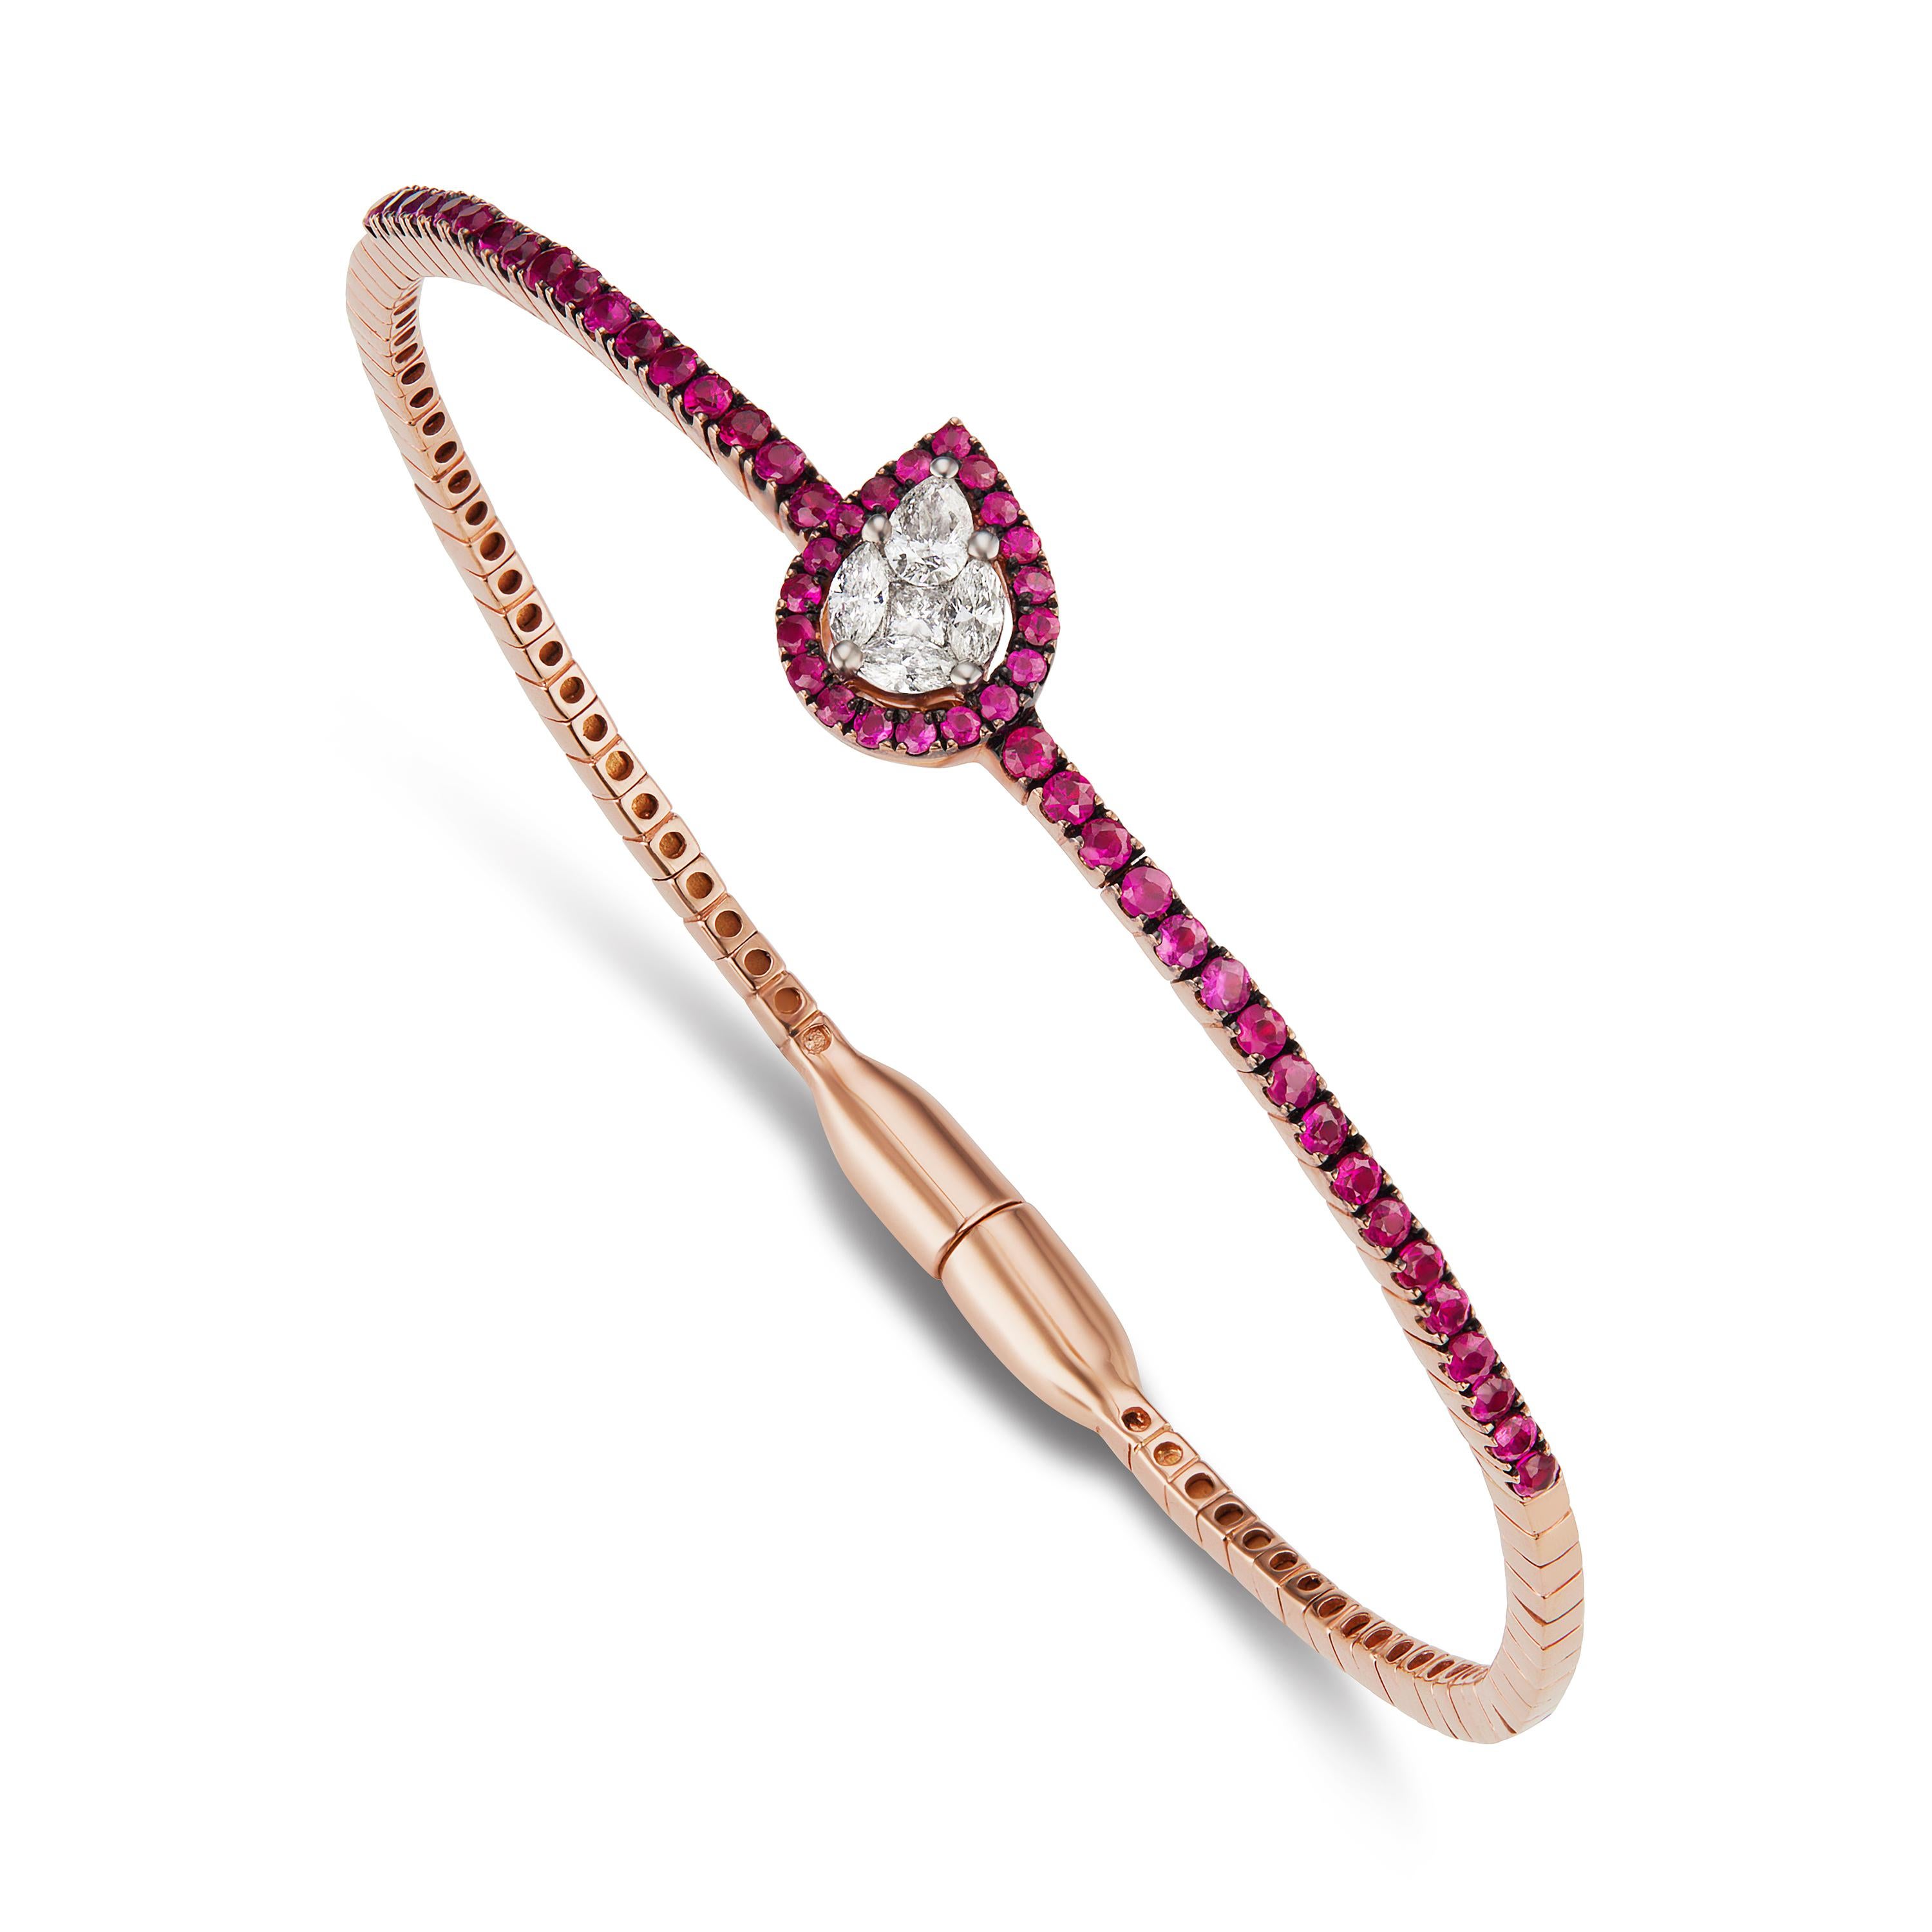 De style classique avec un cœur rouge en blanc scintillant, ce bracelet Gemistry en or rose 18 carats est orné de diamants et de rubis. Ce bracelet est composé de 5 diamants marquise et poire et de 53 rubis ronds. Il est muni d'une serrure